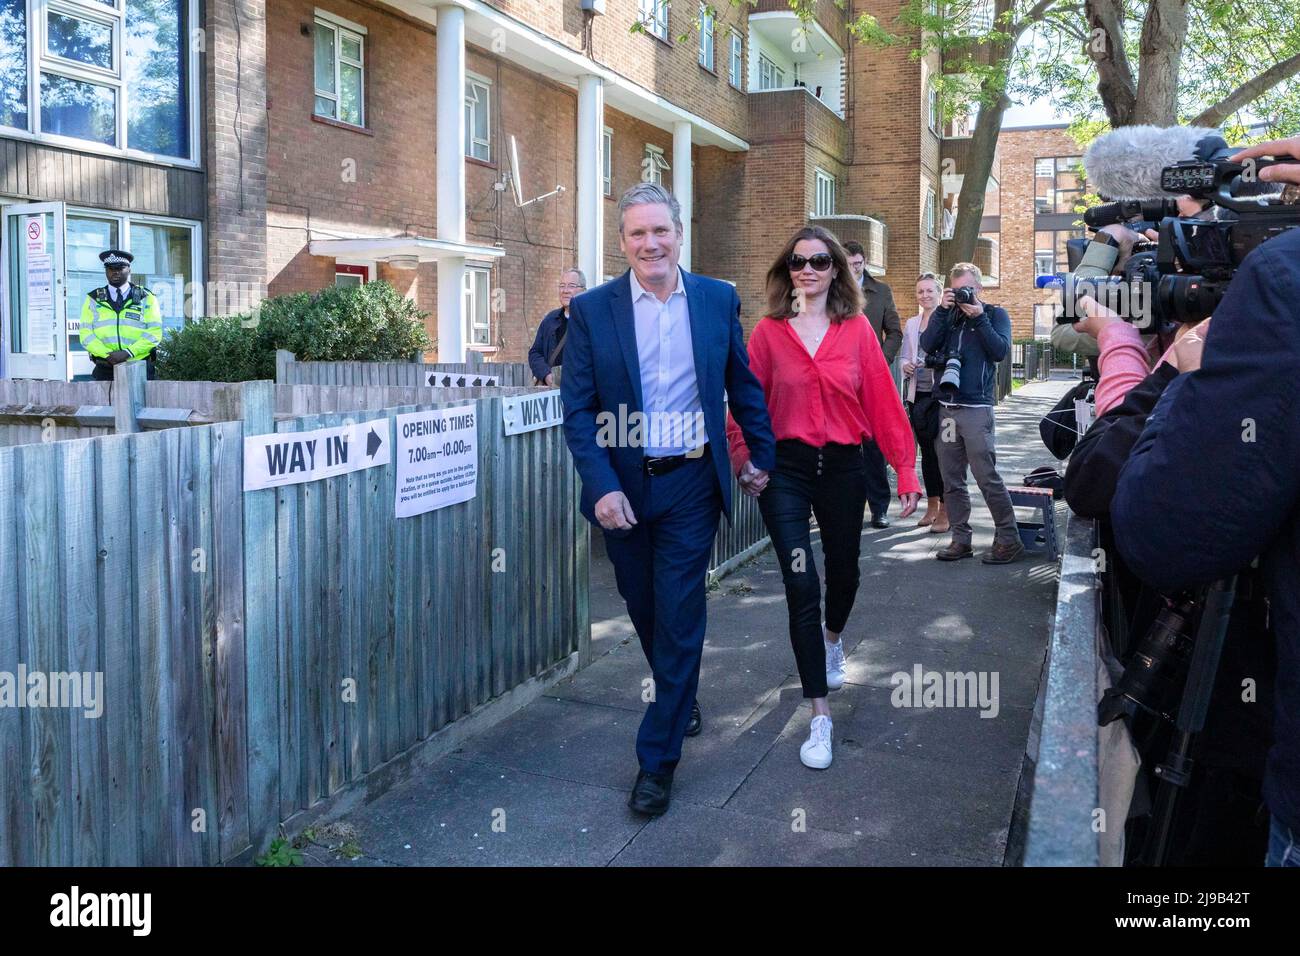 Il leader del partito laburista britannico Keir Stammer voterà questa mattina vicino alla sua casa a Kentish Town. Immagine scattata il 5th maggio 2022. © Belinda Jiao jiao.bil Foto Stock